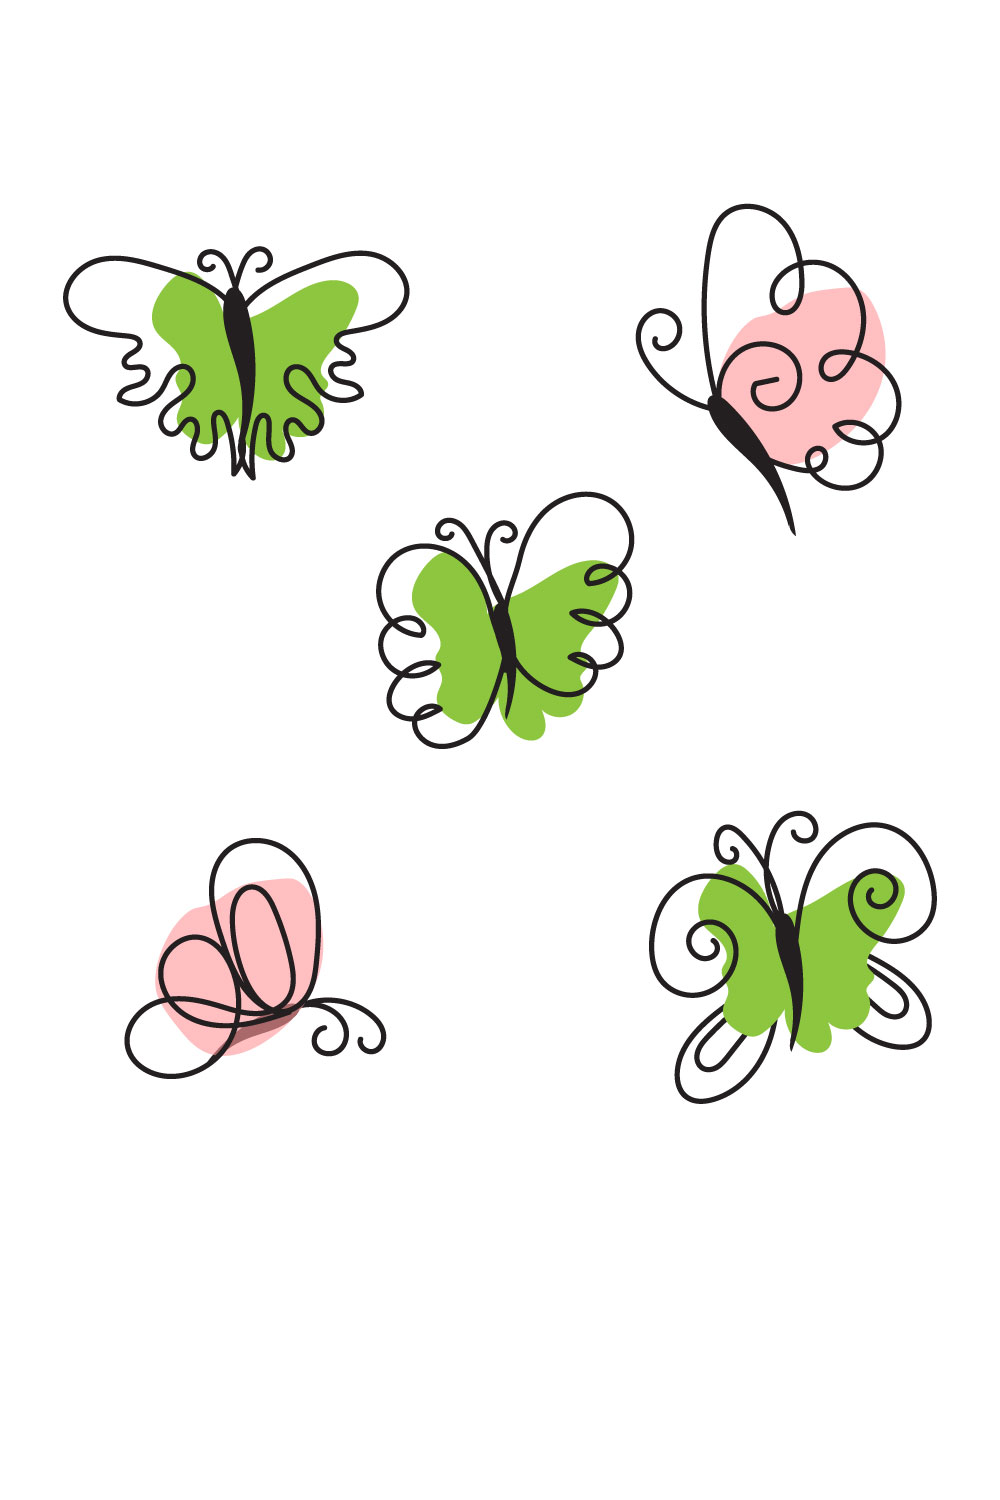 Butterfly Flat Design Pinterest.